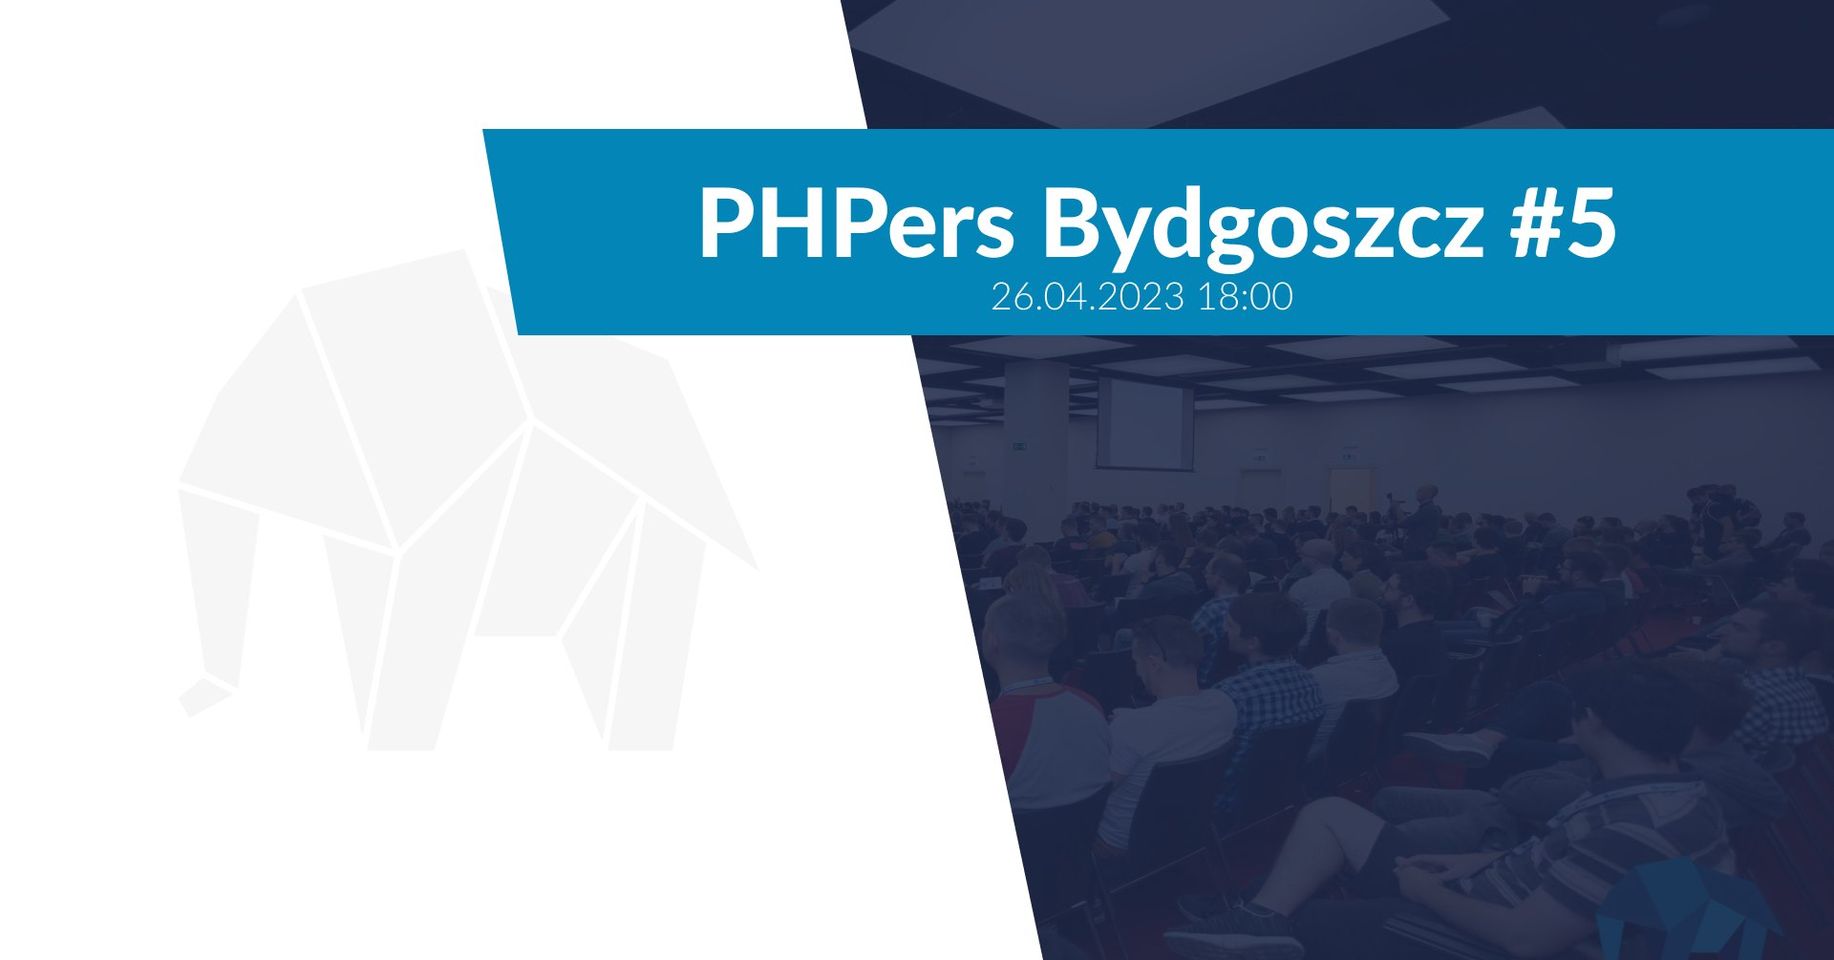 phpers-bydgoszcz-5